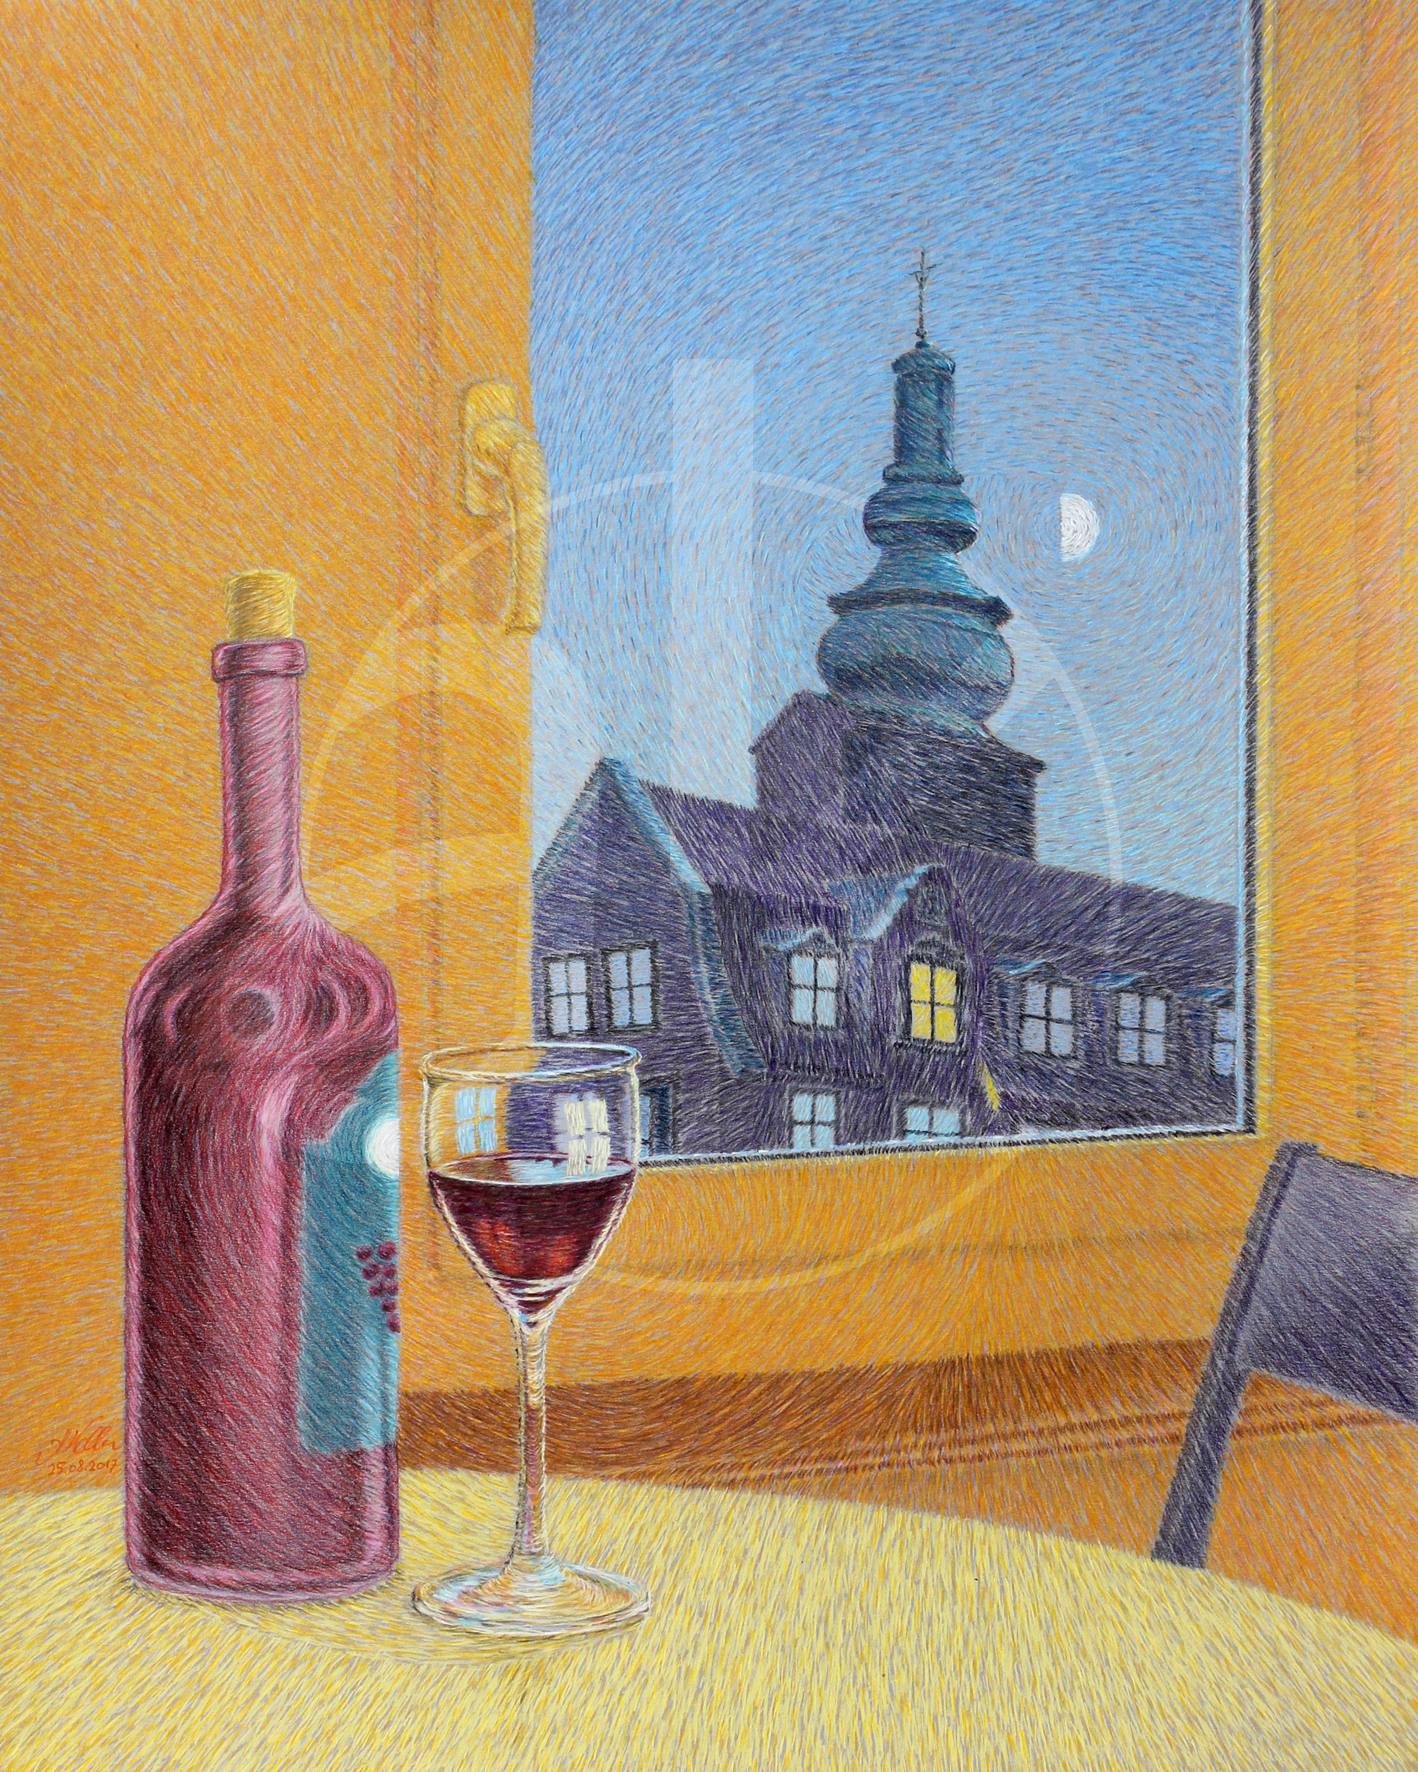  "Sehnsucht (Vin de la lune pleine)" - 40 x 50 cm